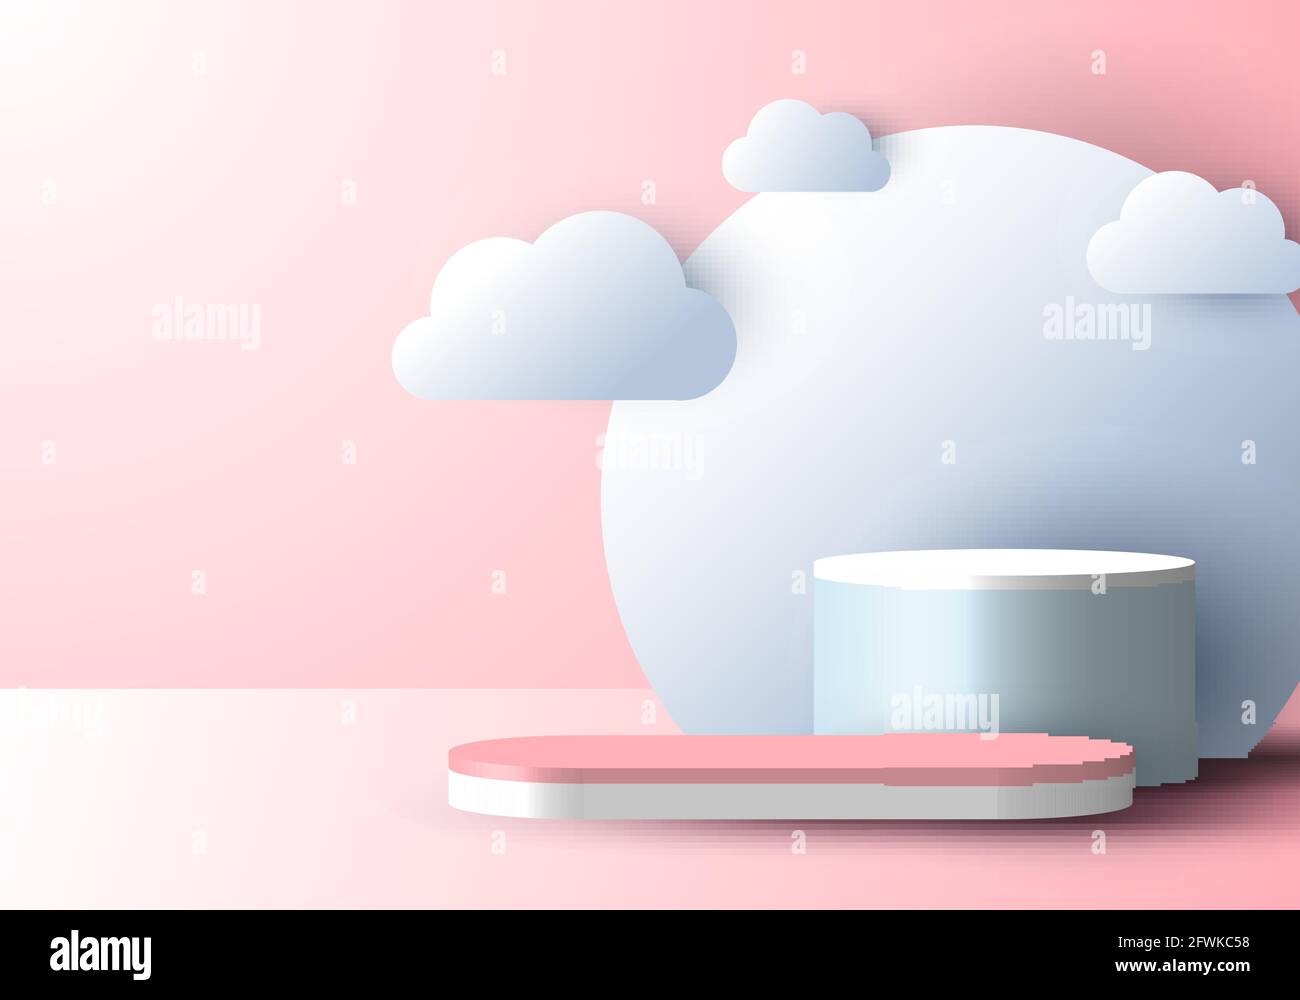 3D réaliste résumé scène minimale vide podium affichage avec style de coupe de papier de nuage sur fond rose doux. Conception pour la présentation des produits, la maquette, Illustration de Vecteur